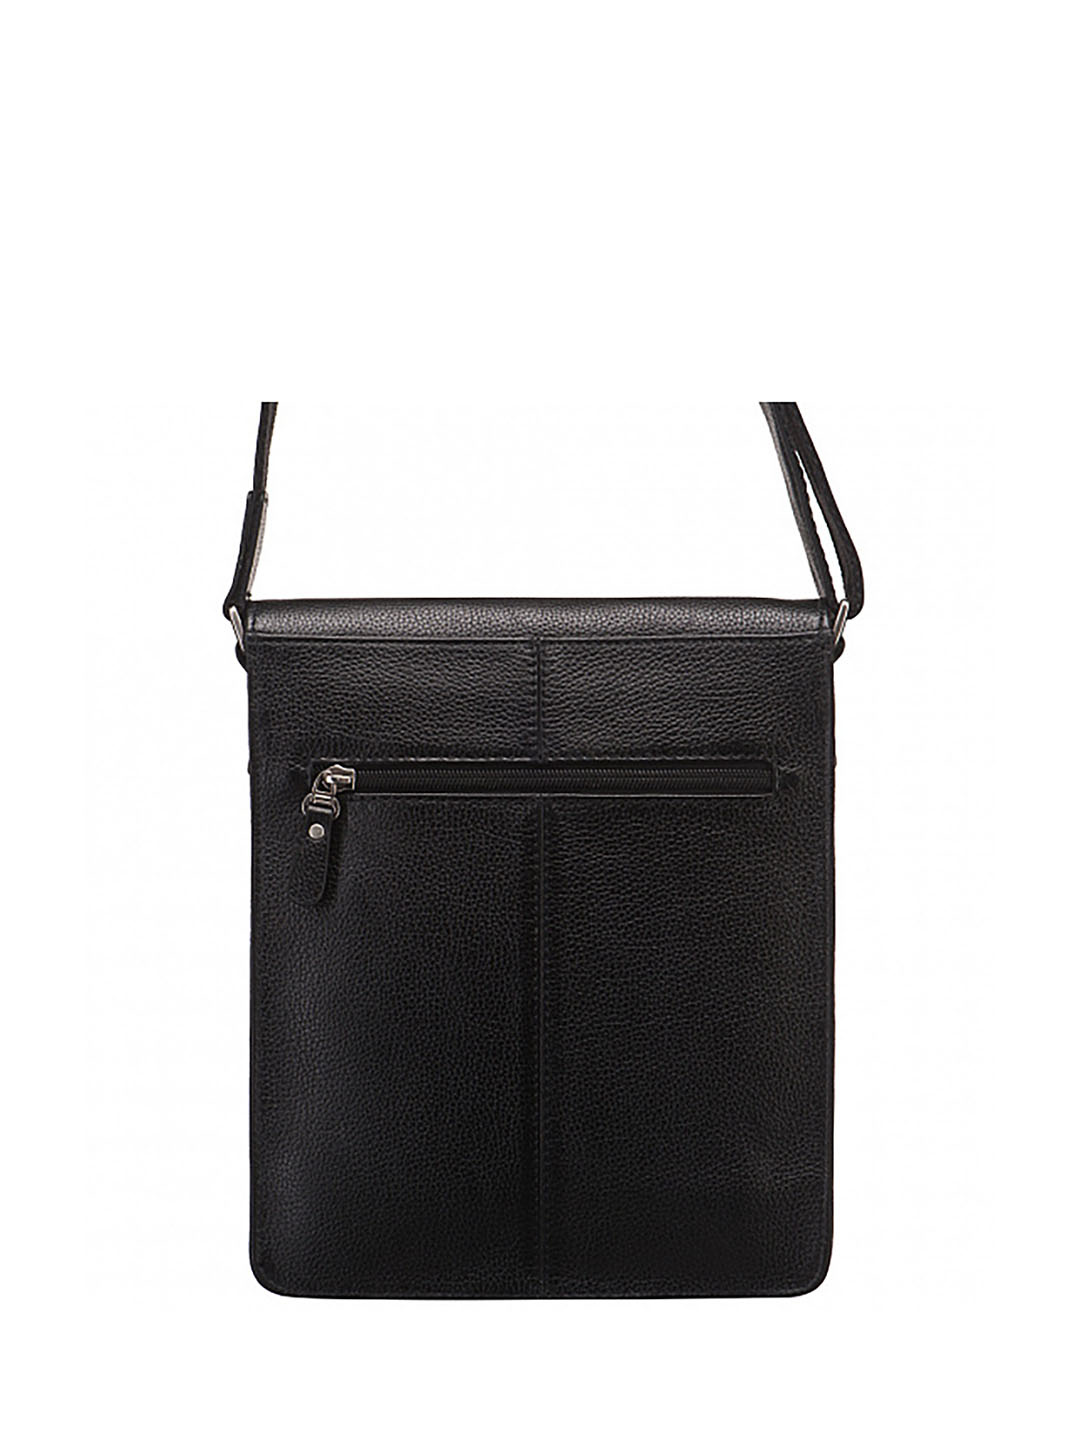 Фото Мужская сумка через плечо черного цвета из натуральной кожи Сумки через плечо